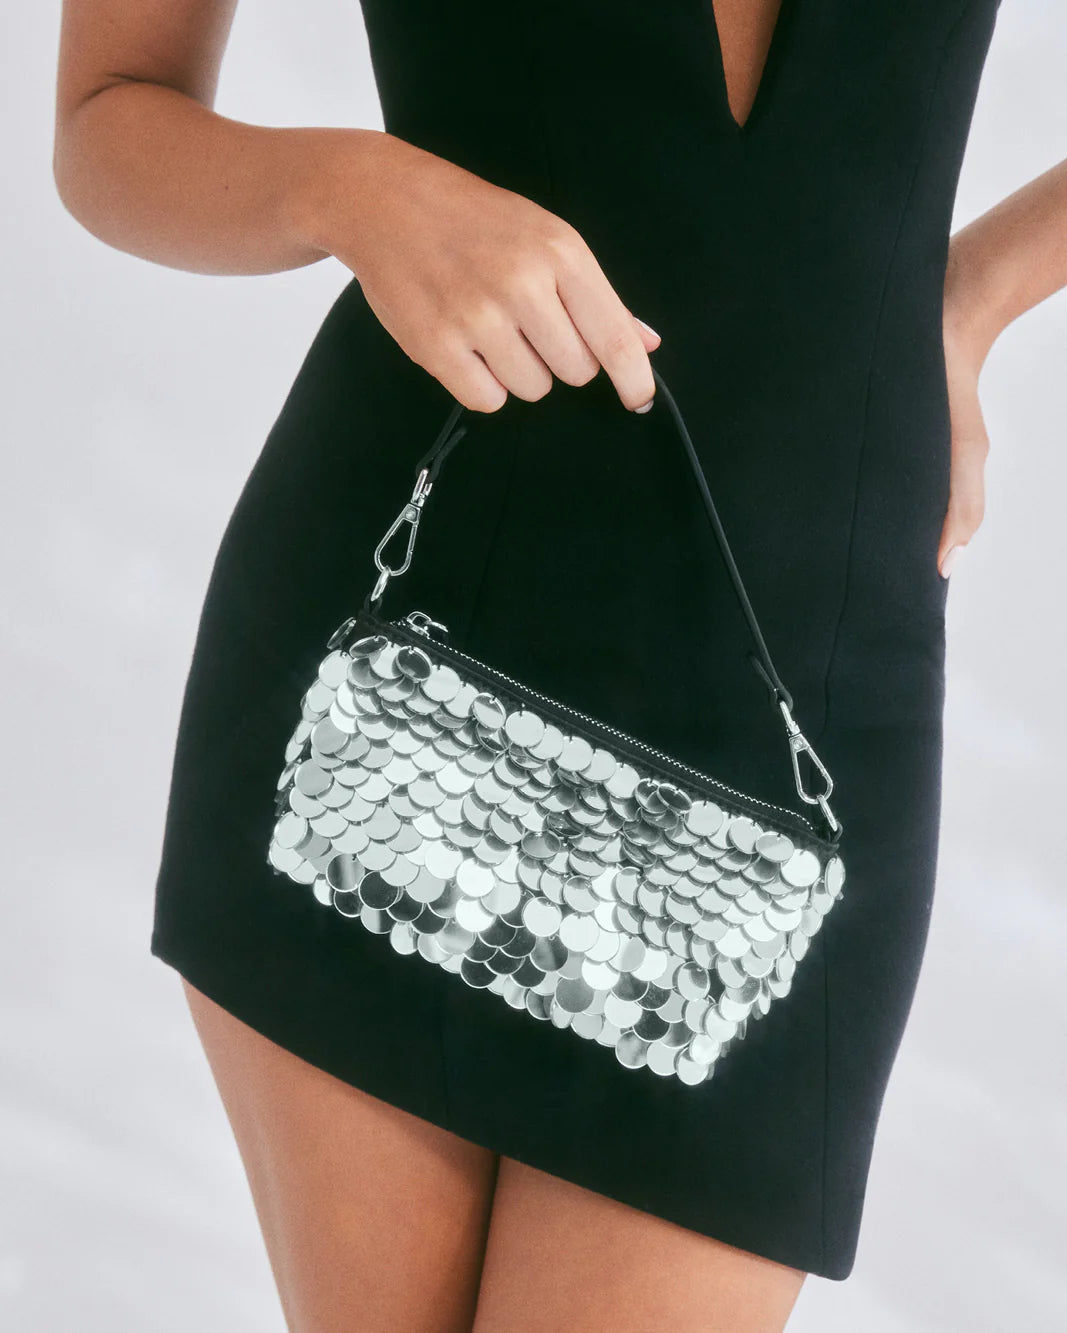 Tilly Handle Bag, Evening Bag by Billini | LIT Boutique